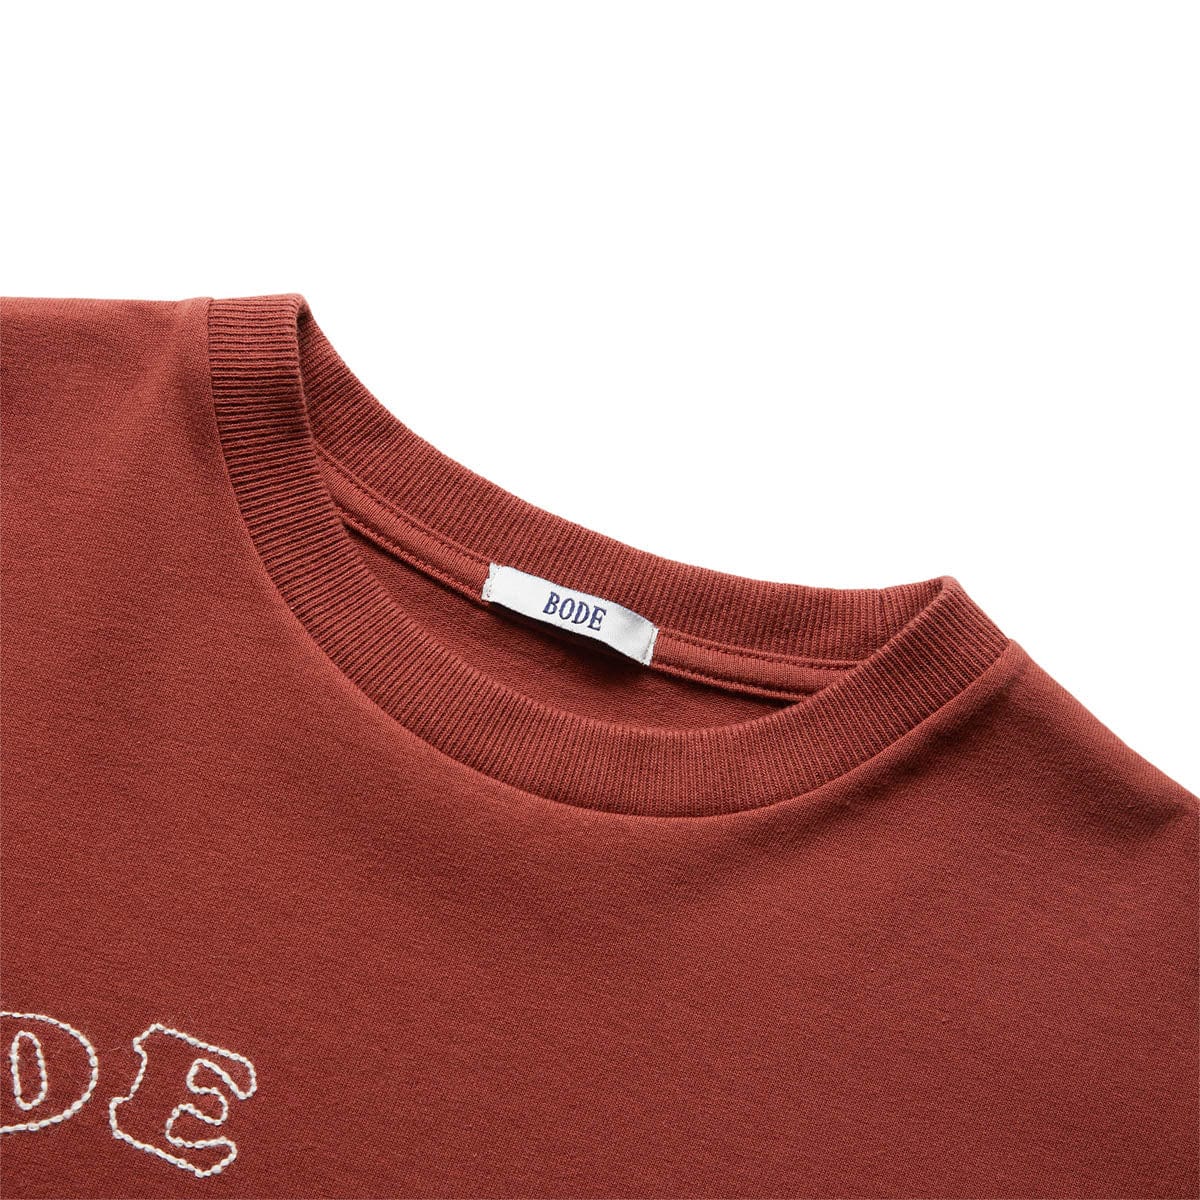 Erweitern Sie Kleinen Garderobe | SHIRT - - PONY Ihrer Print die mit EMBROIDERED dem um T-Shirt einen von GmarShops bezaubernden Rooster BROWN T